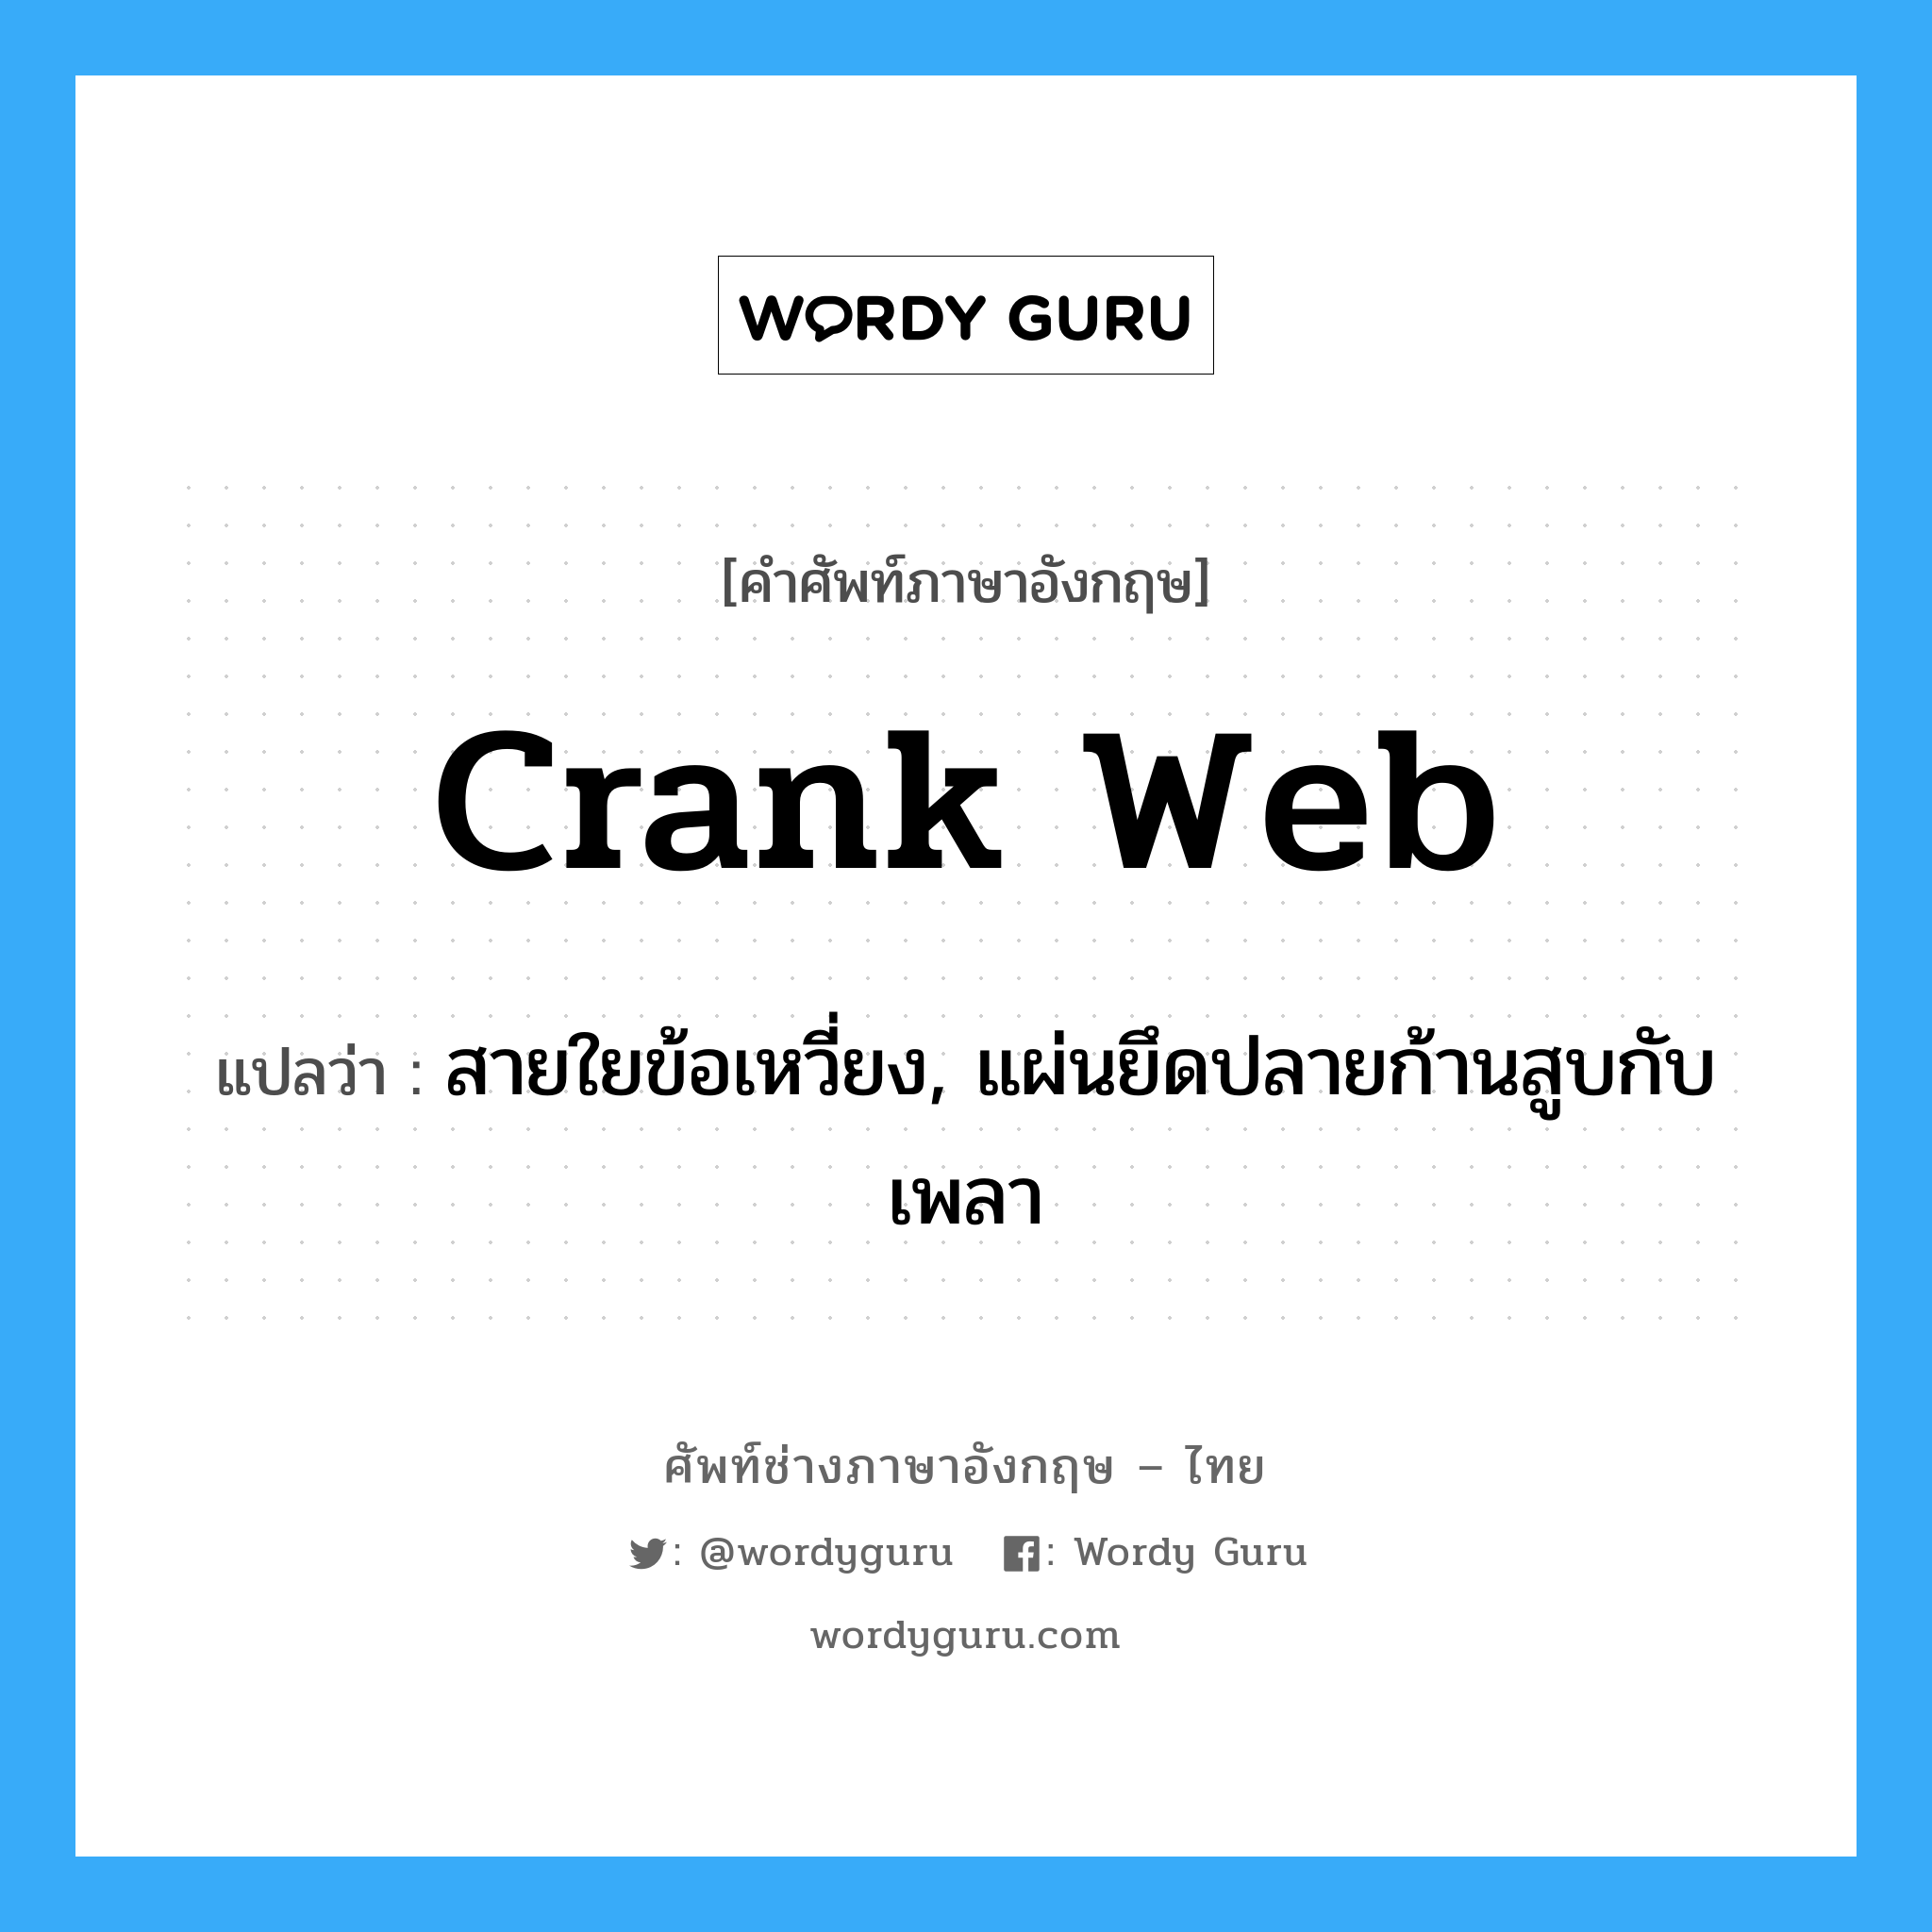 crank web แปลว่า?, คำศัพท์ช่างภาษาอังกฤษ - ไทย crank web คำศัพท์ภาษาอังกฤษ crank web แปลว่า สายใยข้อเหวี่ยง, แผ่นยึดปลายก้านสูบกับเพลา